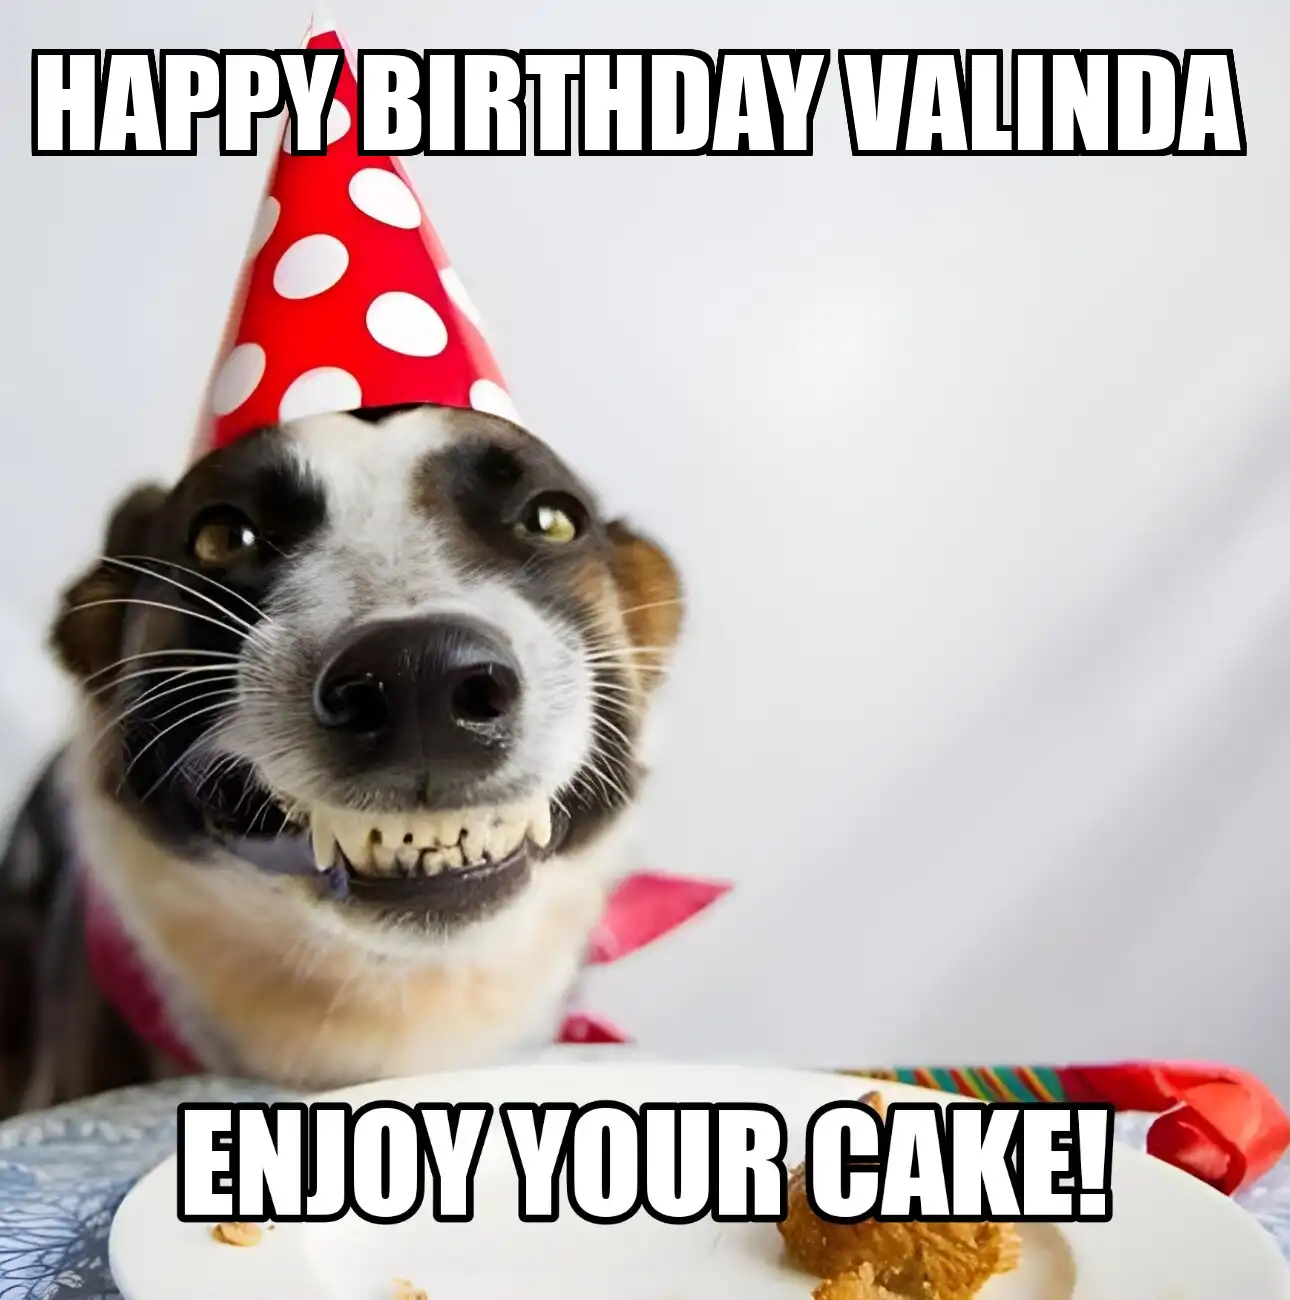 Happy Birthday Valinda Enjoy Your Cake Dog Meme